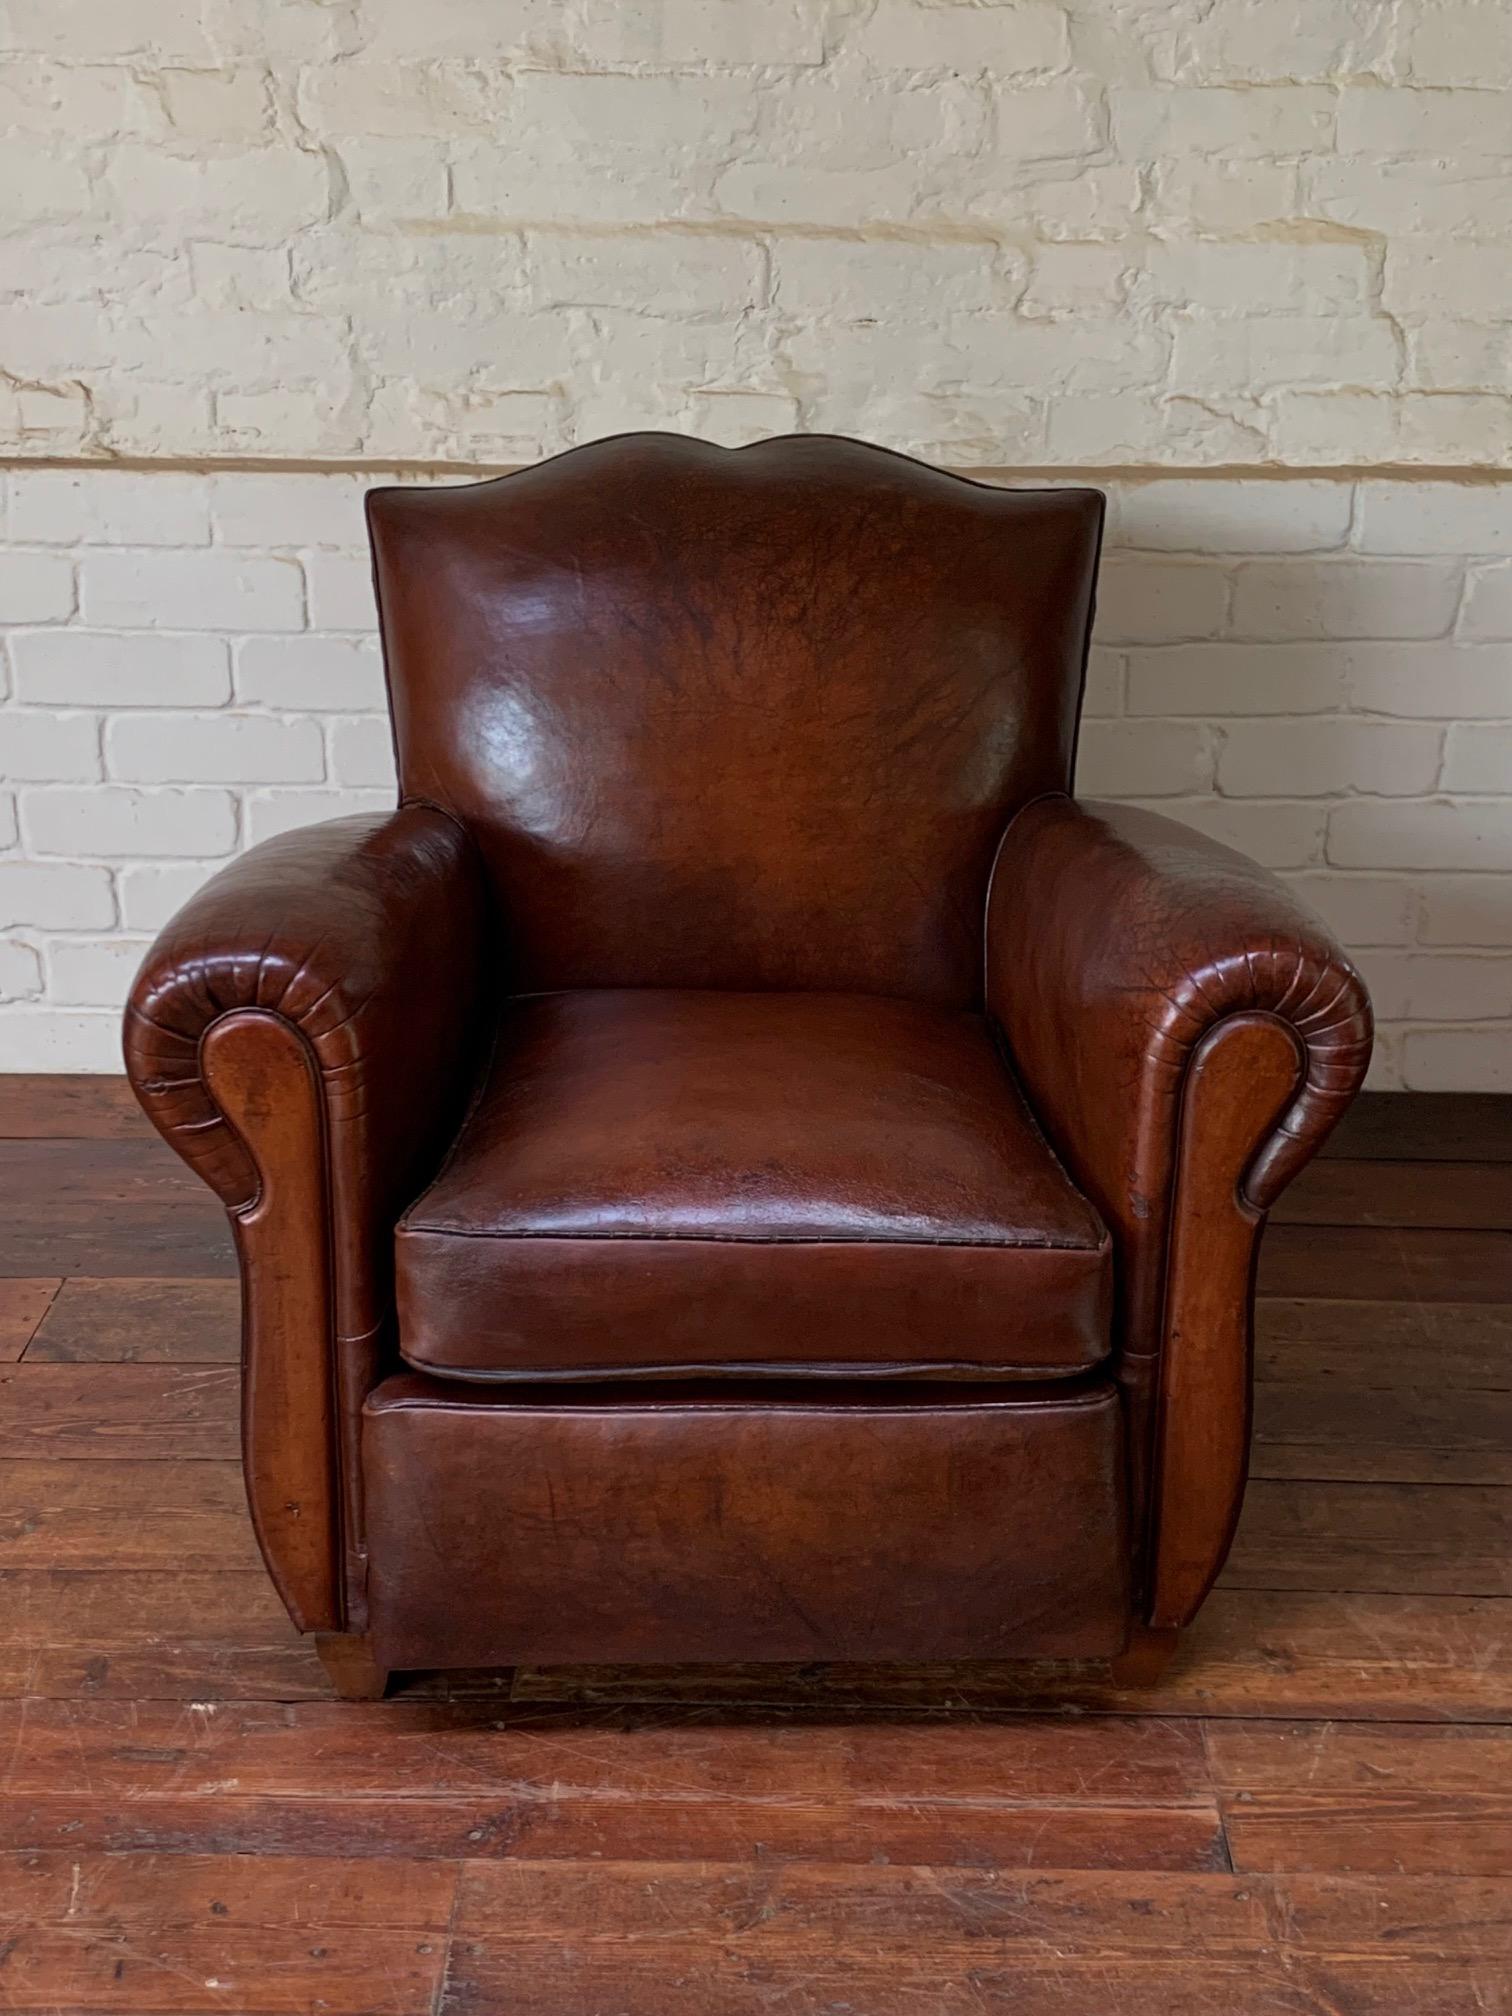 Quelle belle chaise ! Le cuir riche de couleur brun havane, avec sa patine douce et cireuse, est en très bel état. La chaise elle-même est un très beau modèle et présente de très beaux détails de conception qui en font une pièce tout à fait